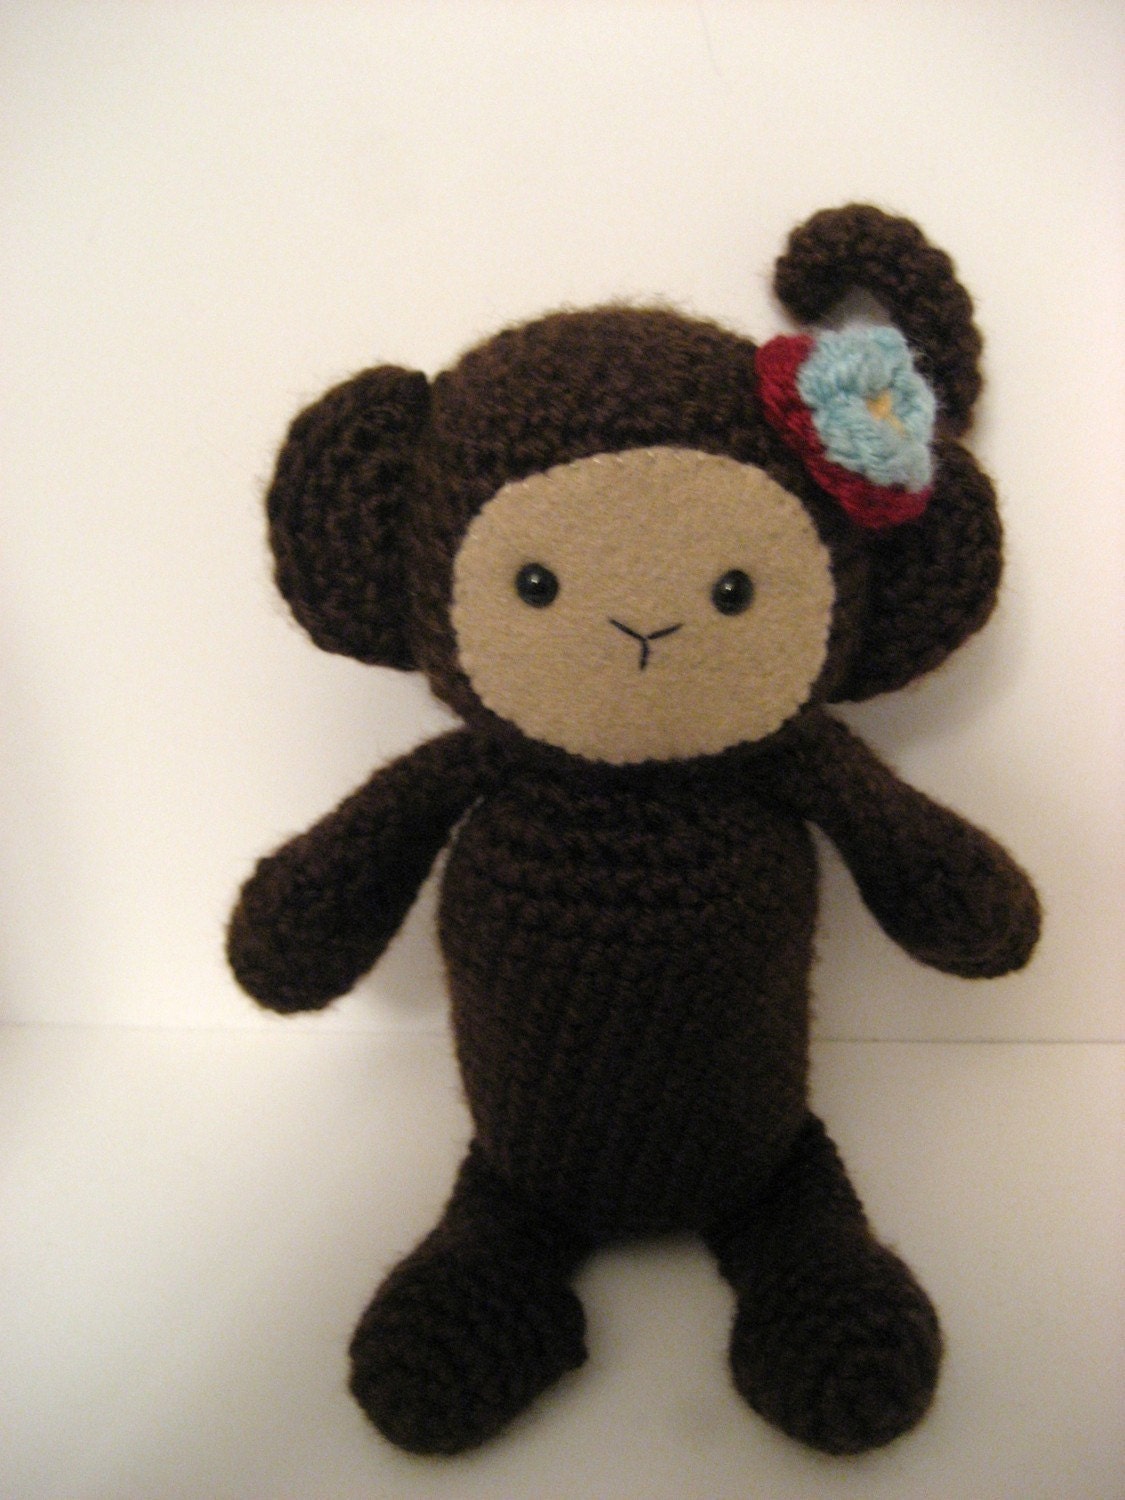 Free Amigurumi Patterns: Monkey Madness!